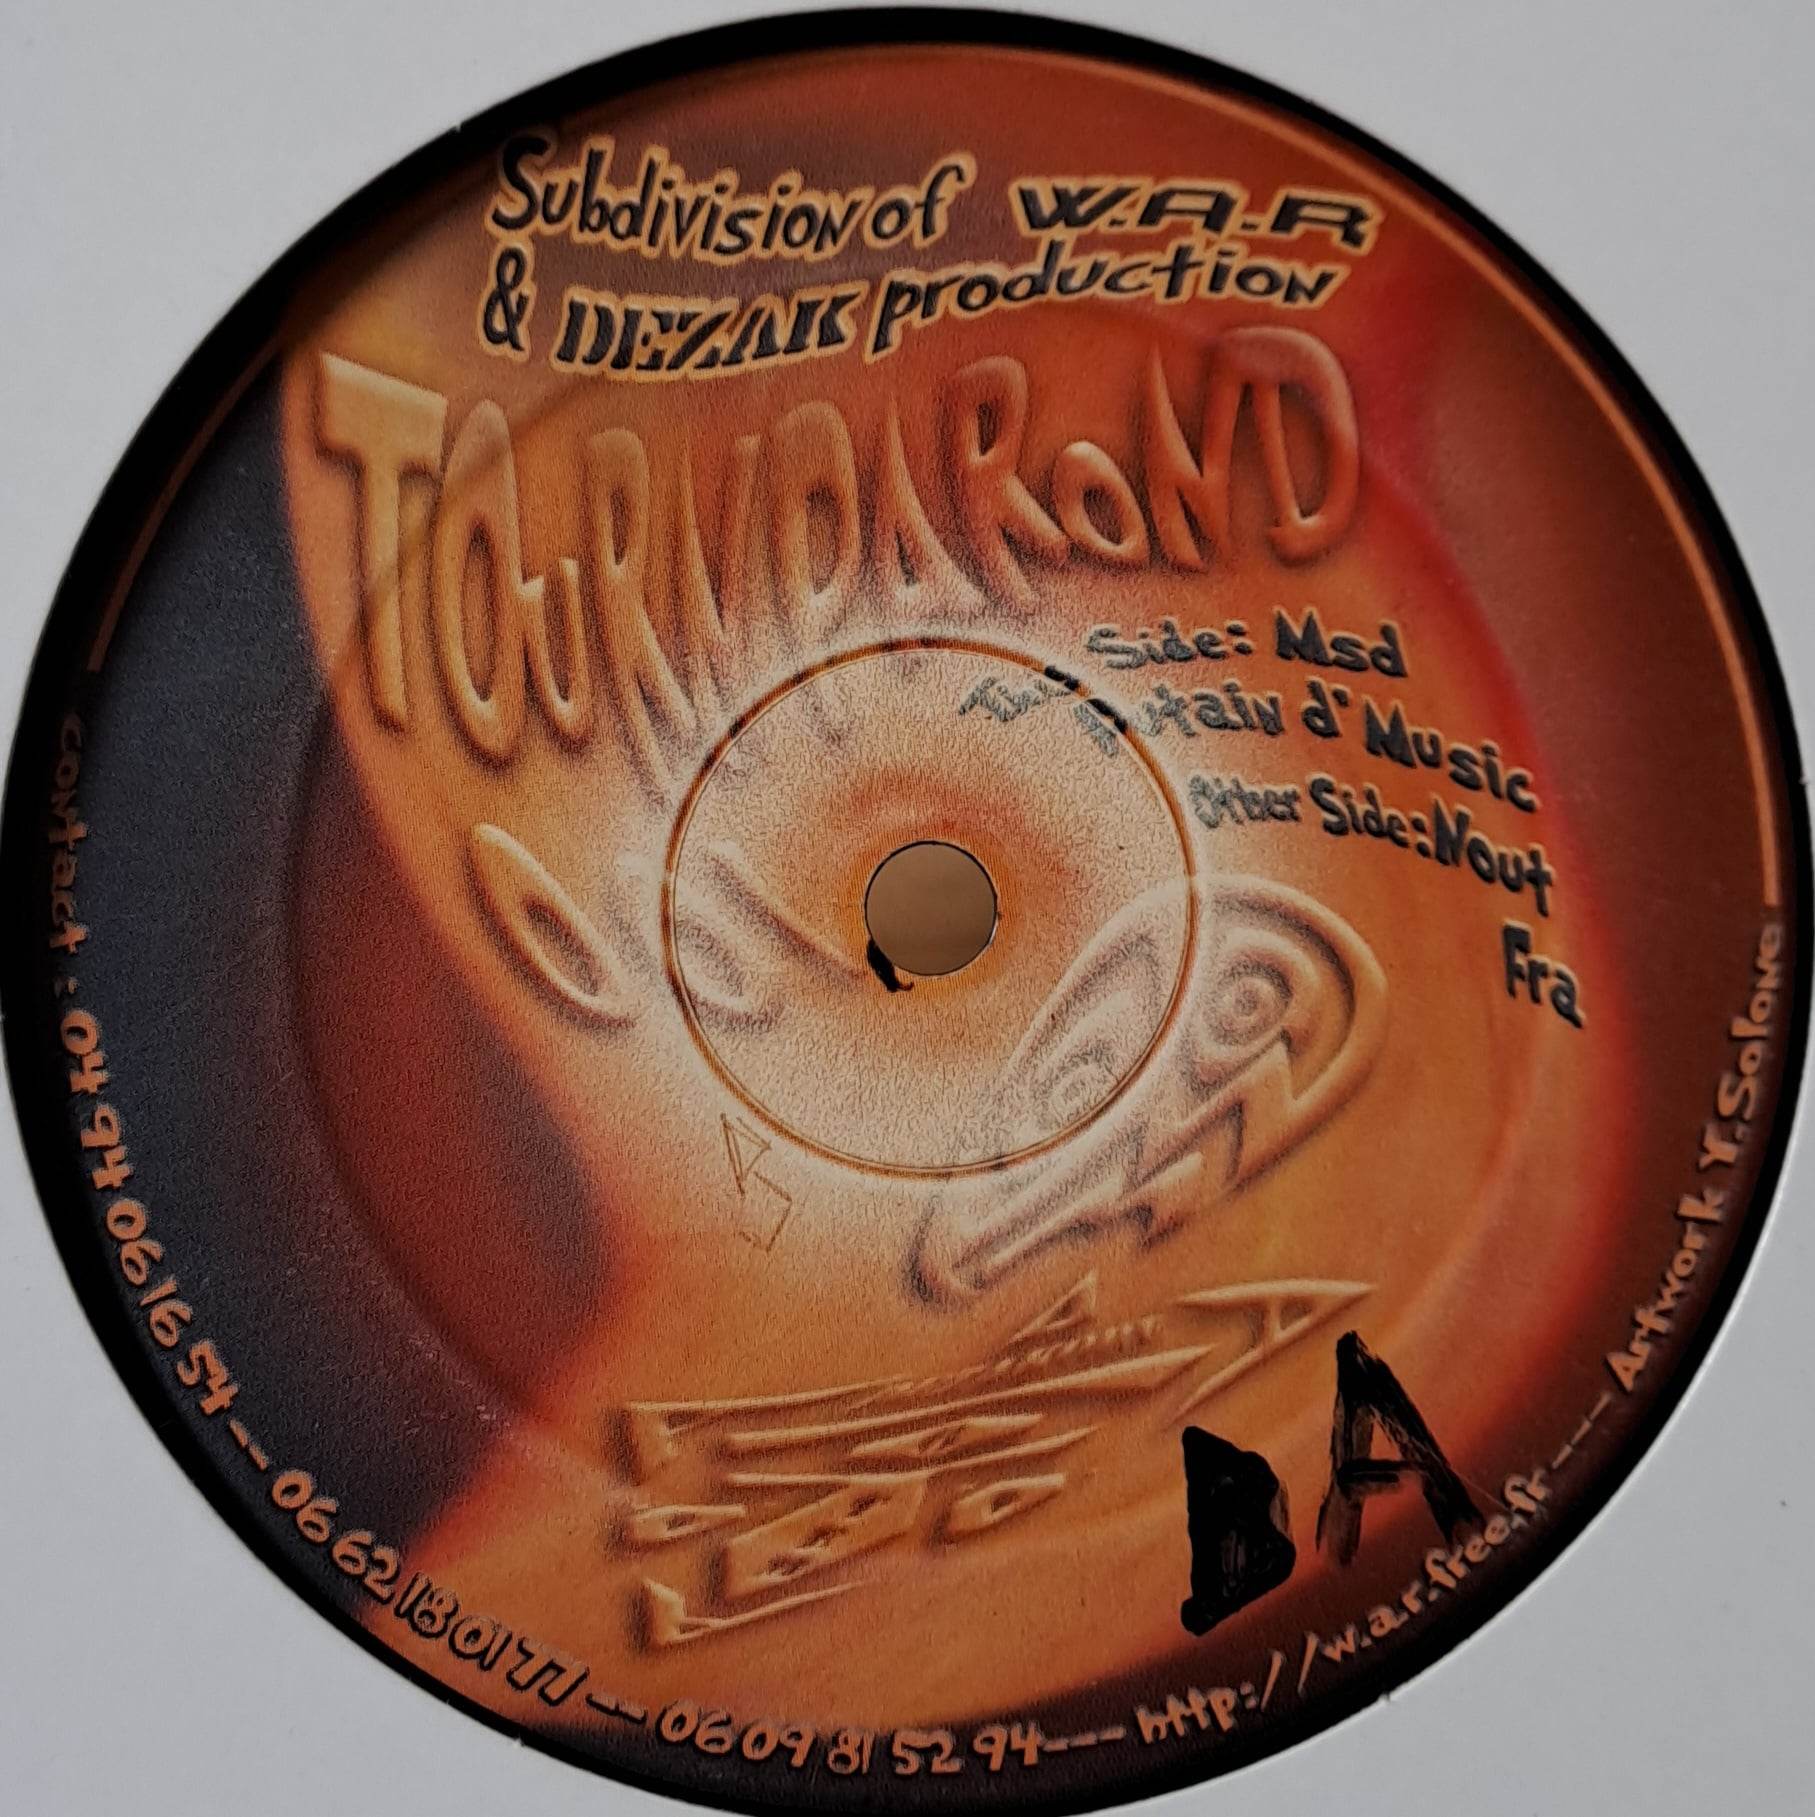 Tournparond 001 - vinyle freetekno